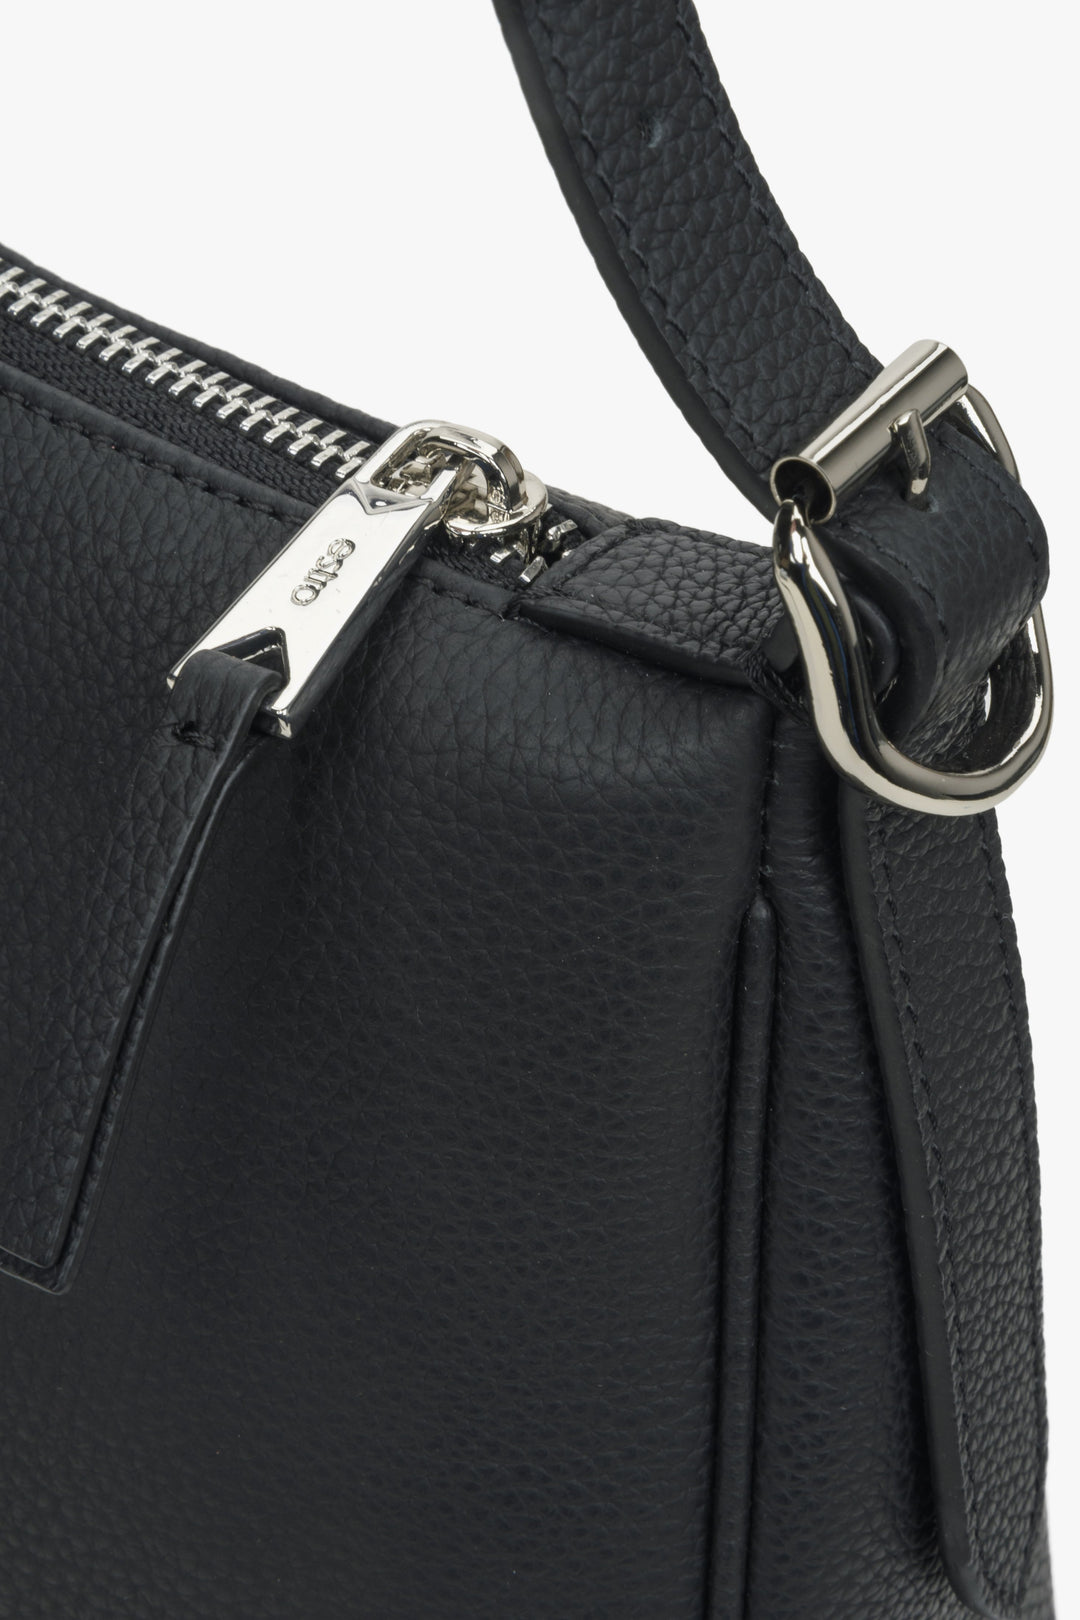 Leather shoulder bag in black - close-up on the details.